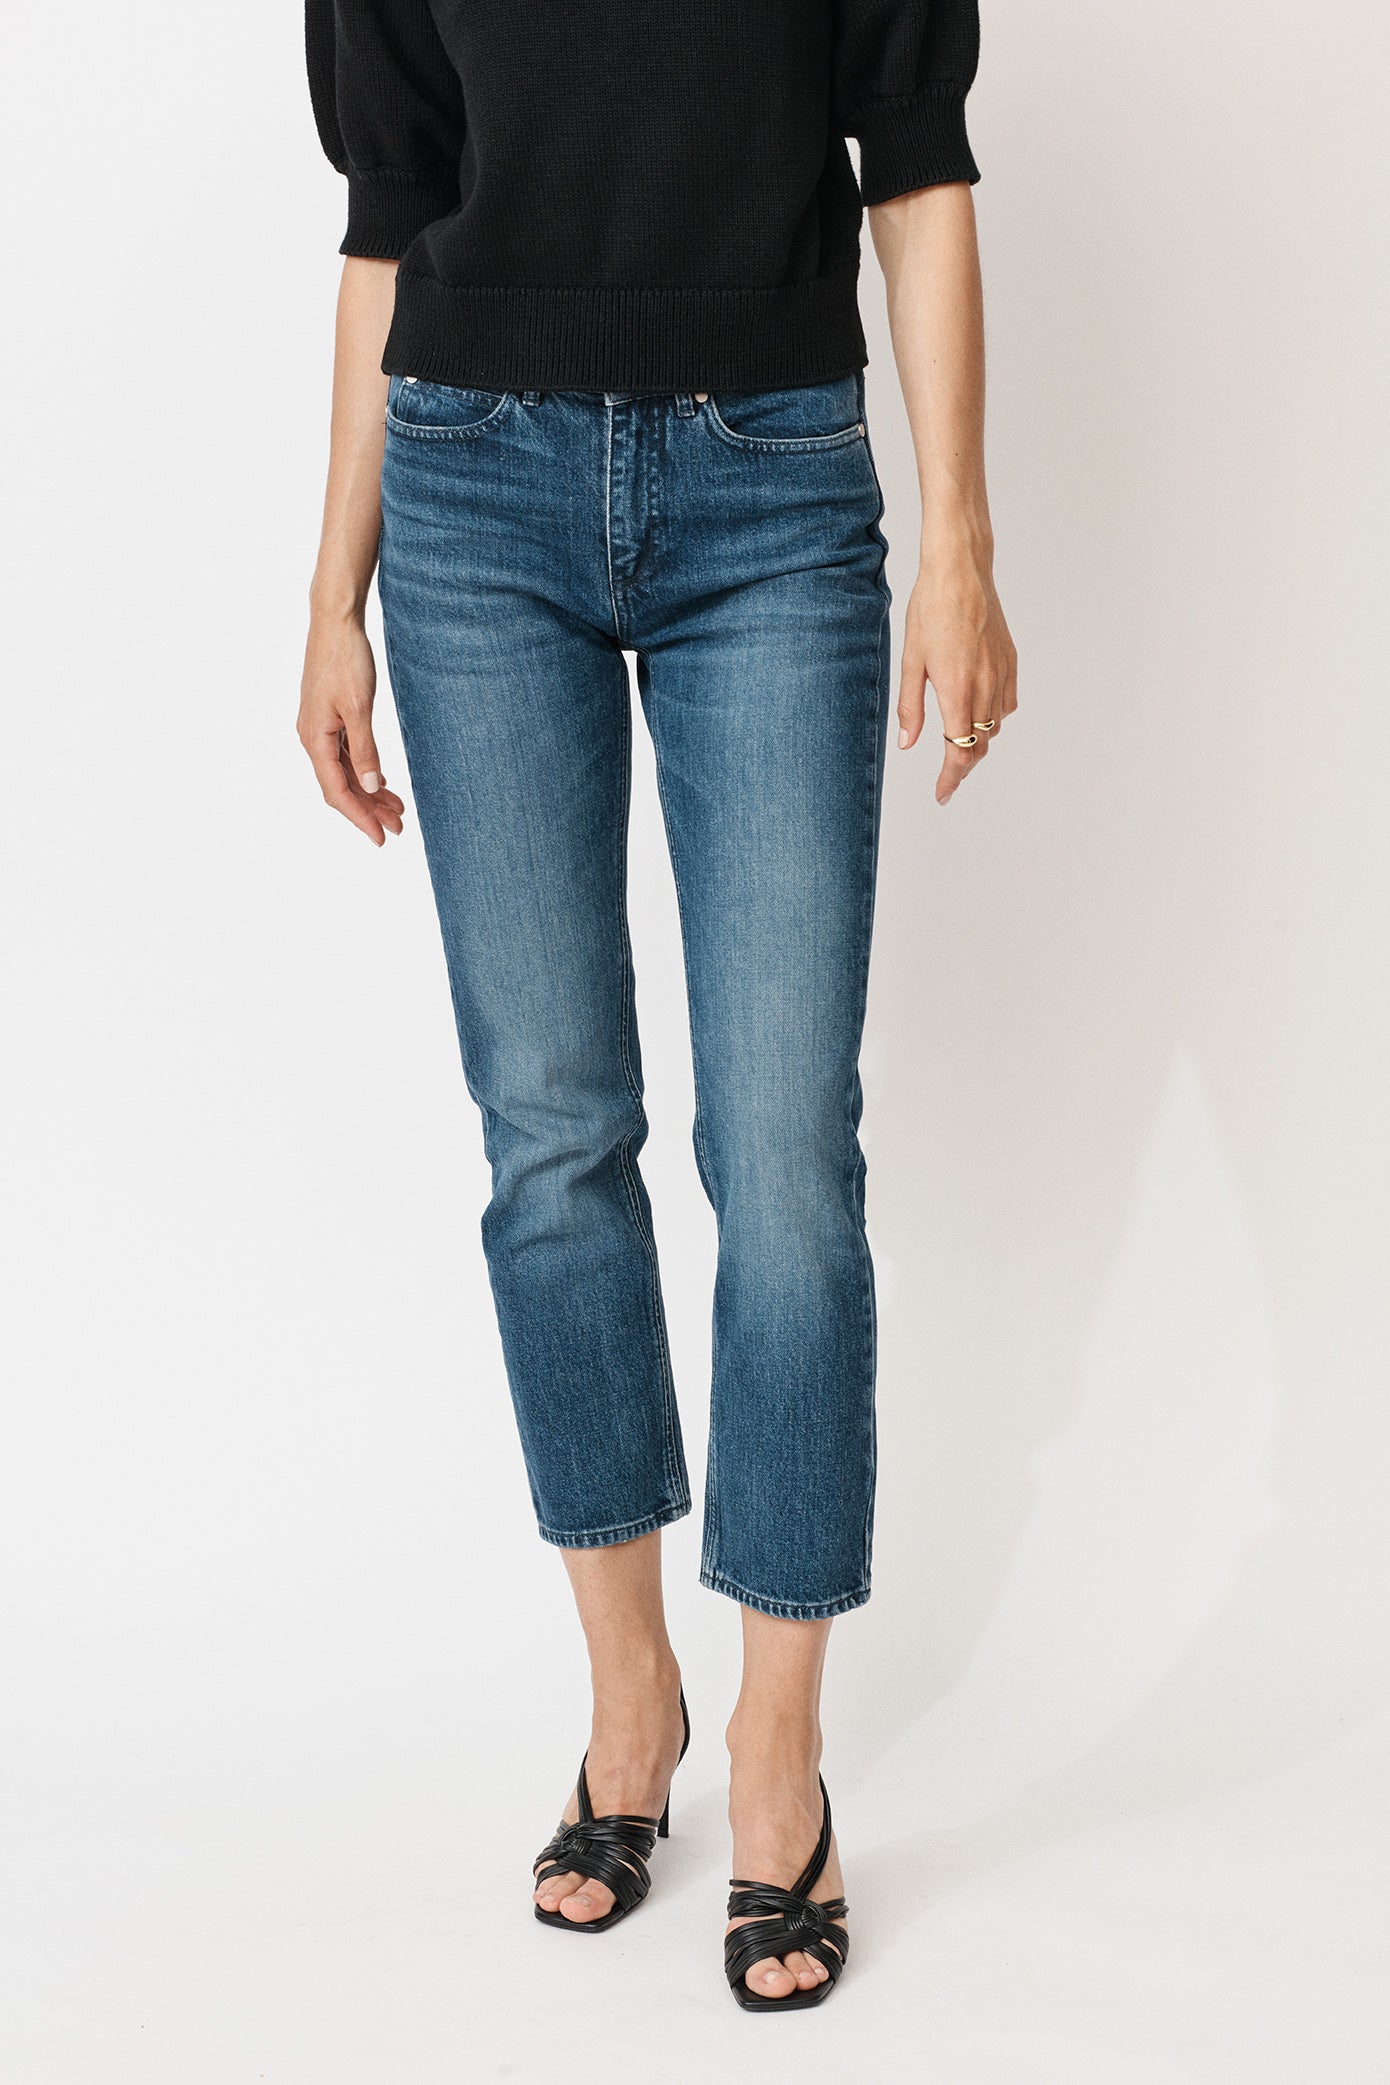 sandhed gå i stå Overskyet Hedvig Jeans - Original blue straight fit jeans I Mayla Stockholm